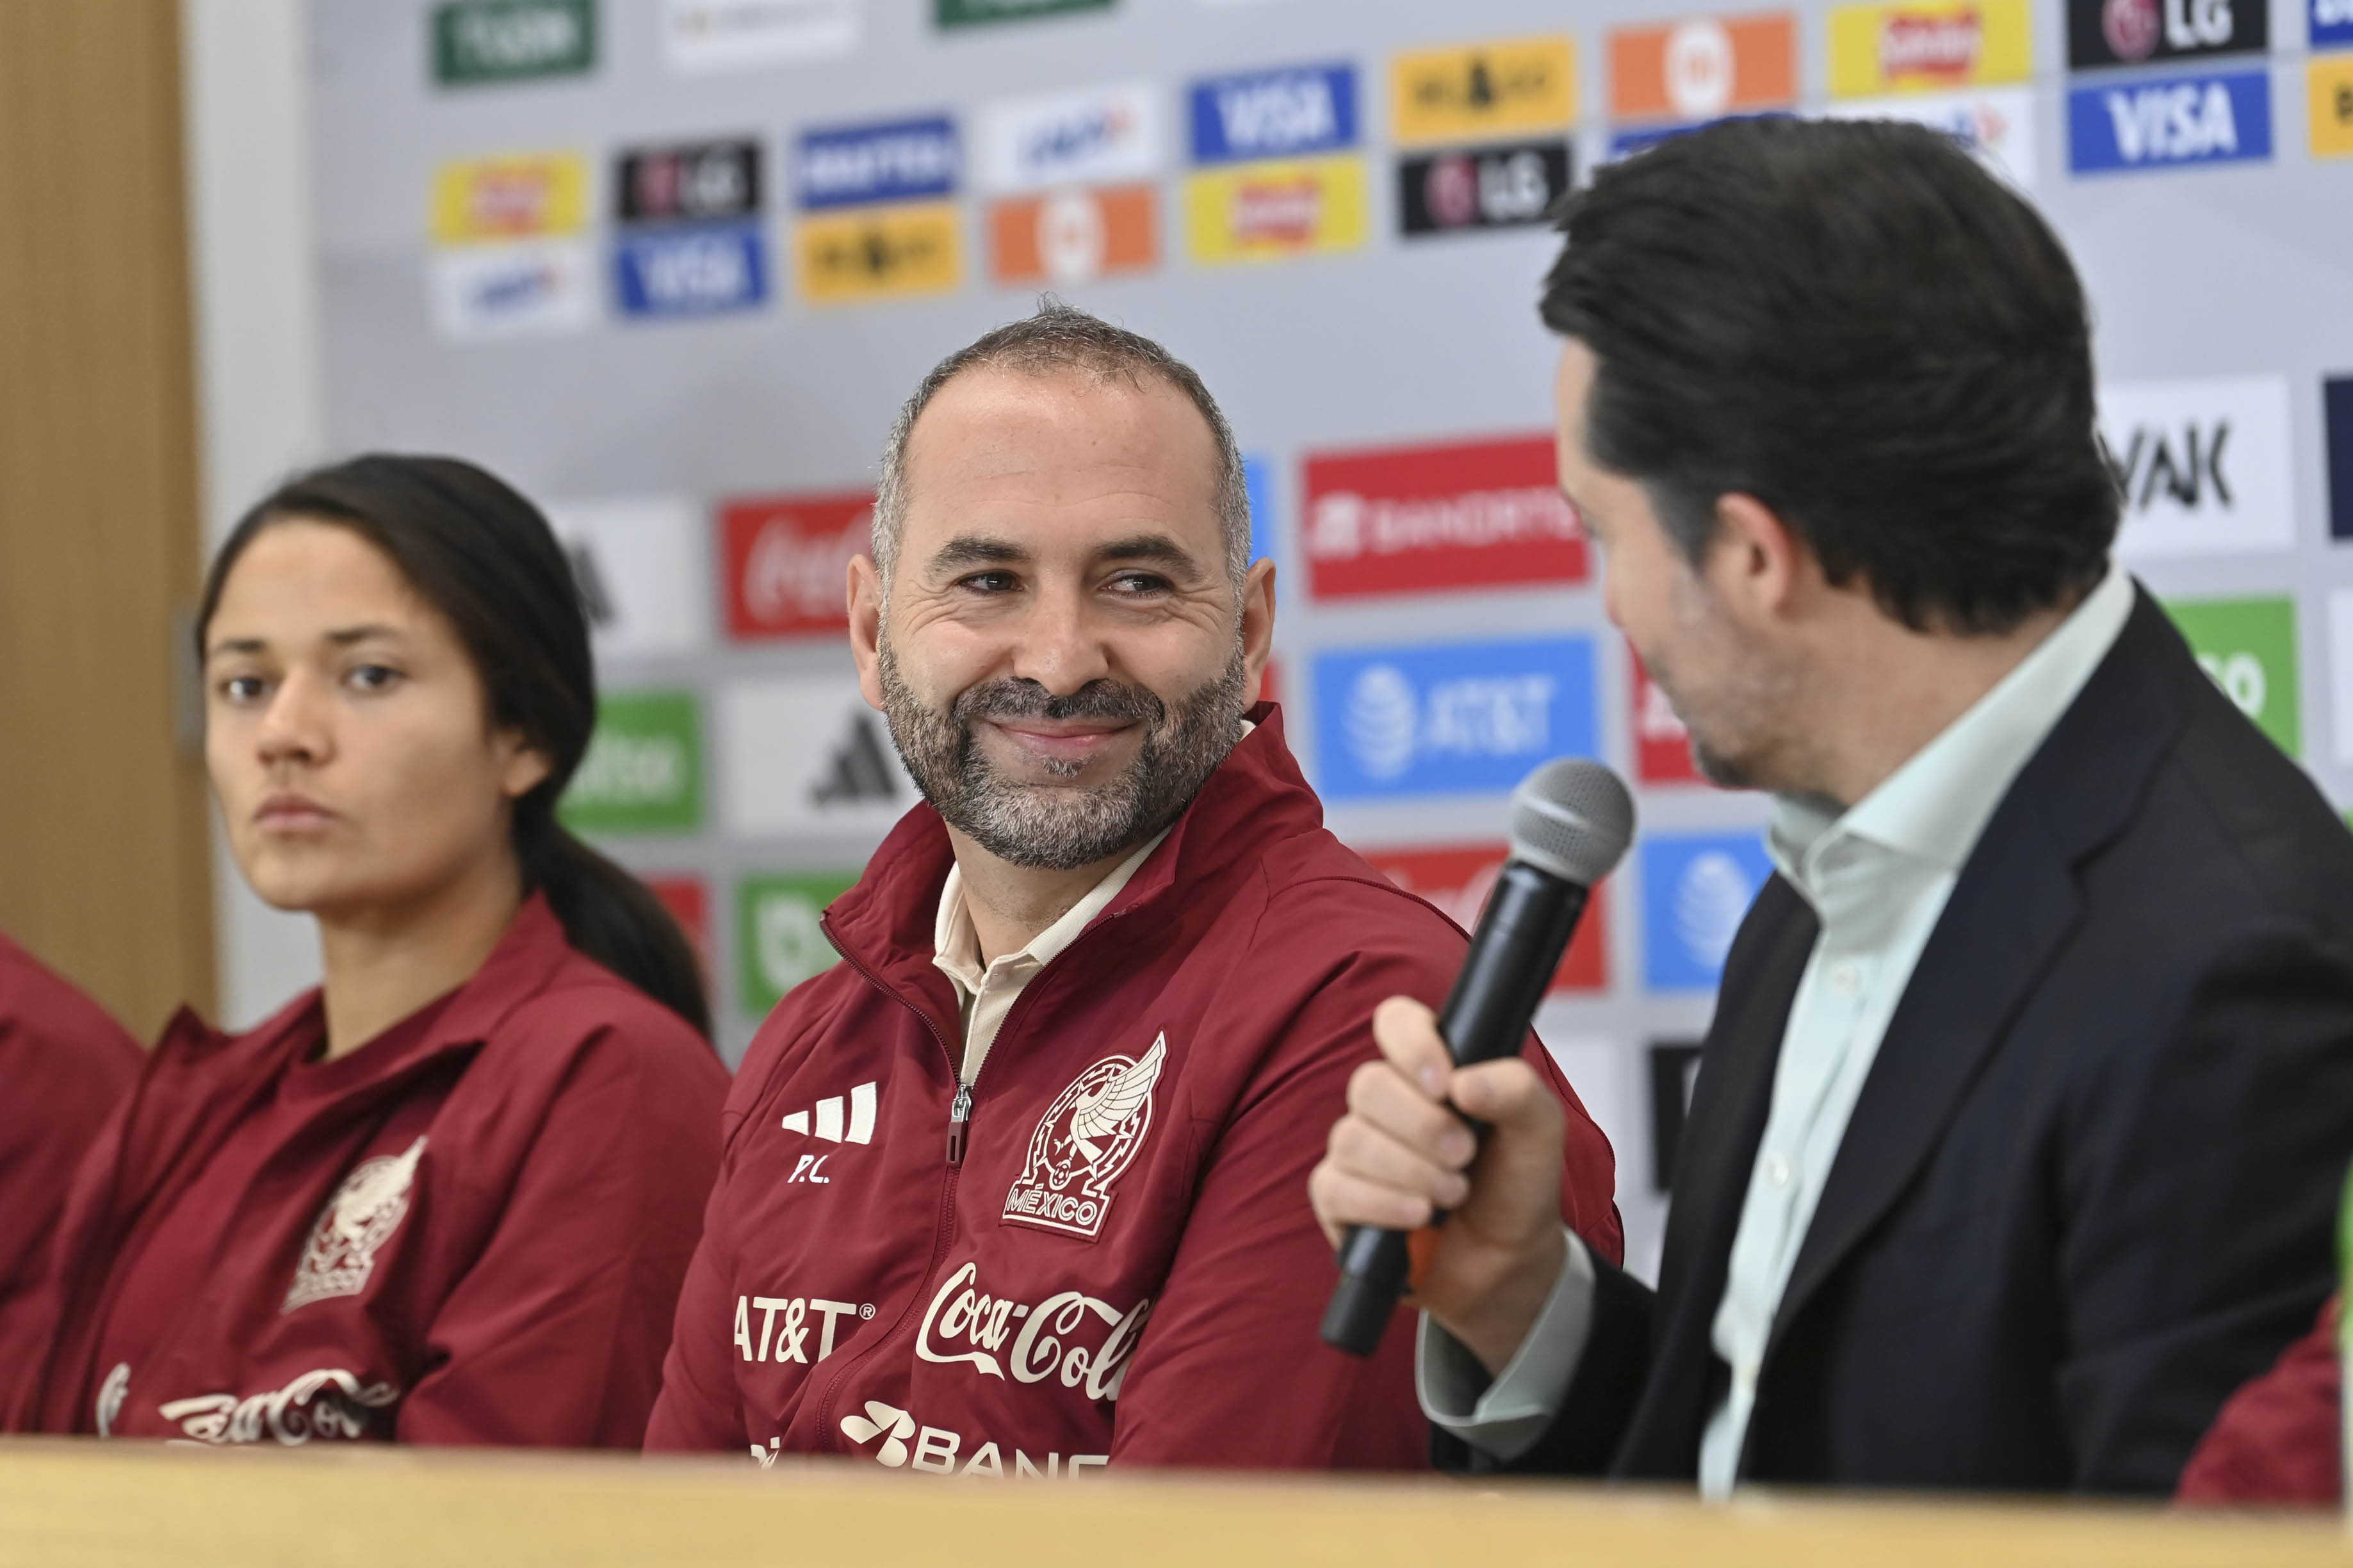 FMF presentó al español Pedro López como nuevo entrenador del Tri Femenil: “Conozco las necesidades y demandas”